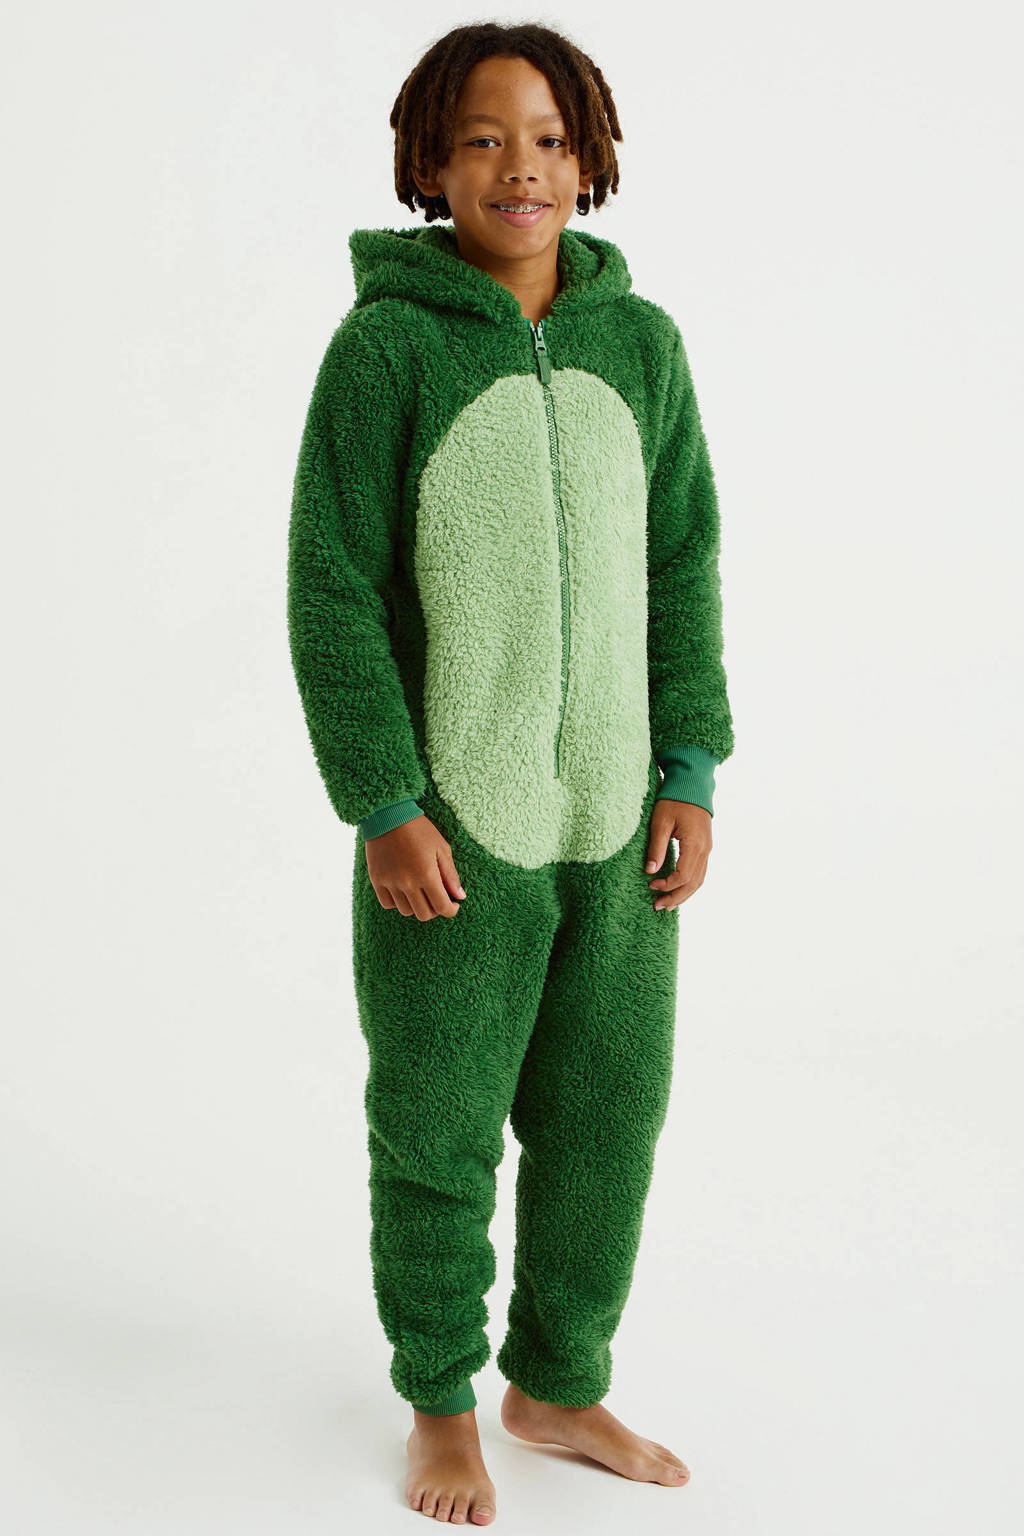 teddy onesie groen